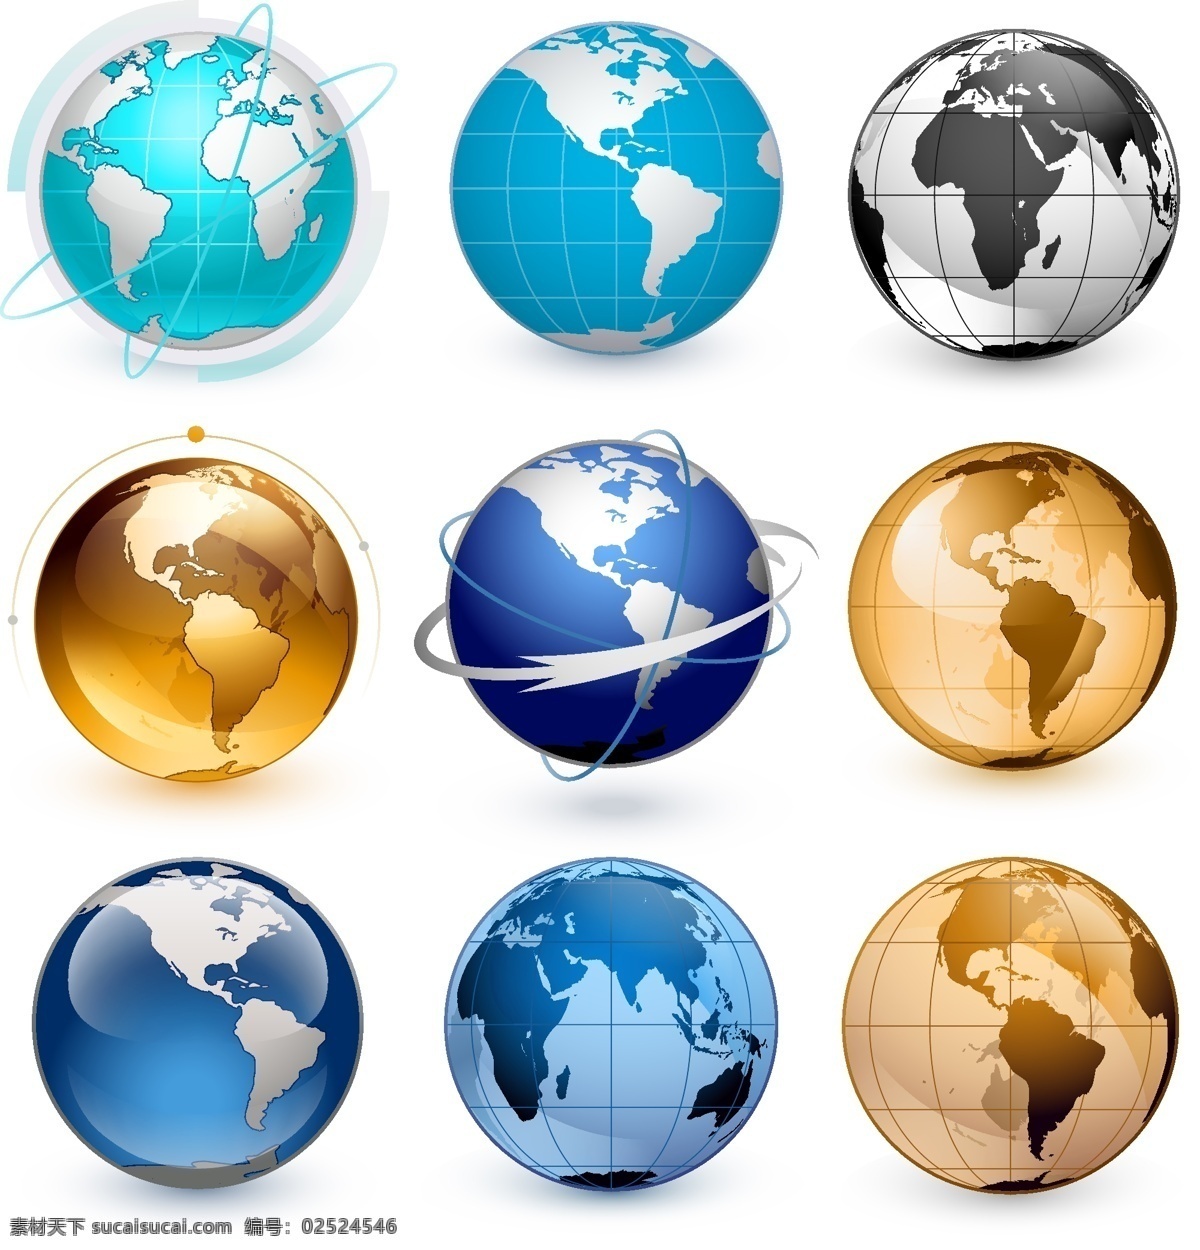 立体地球 3d地球 地球图标 几何地球 线条地球 地球剪影 地球仪 全世界 世界地域 世界形状 世界图形 地形 矢量地球 卡通地球 手绘地球 地球插画 地球集合 系列地球 地球系列 创意地球 艺术地球 蓝色地球 图标标签标志 标志图标 其他图标